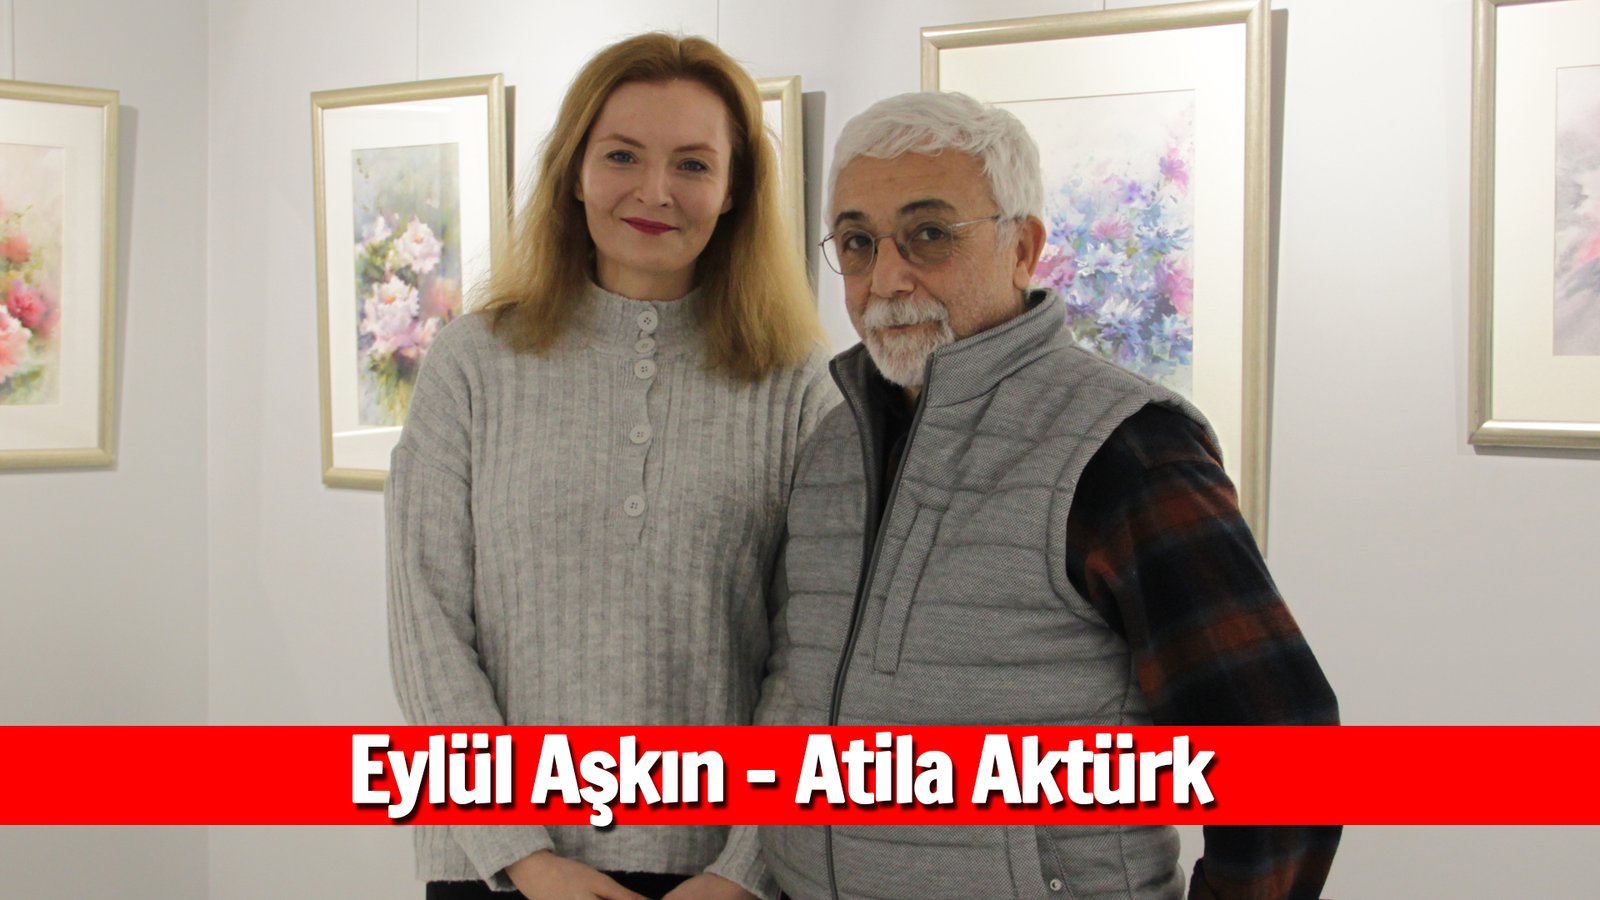 Türbanın Bu ülkede Sorun Olacağının Resmini Yaptım Atila Aktürk, Eylül Aşkın Söyleşisi (1)